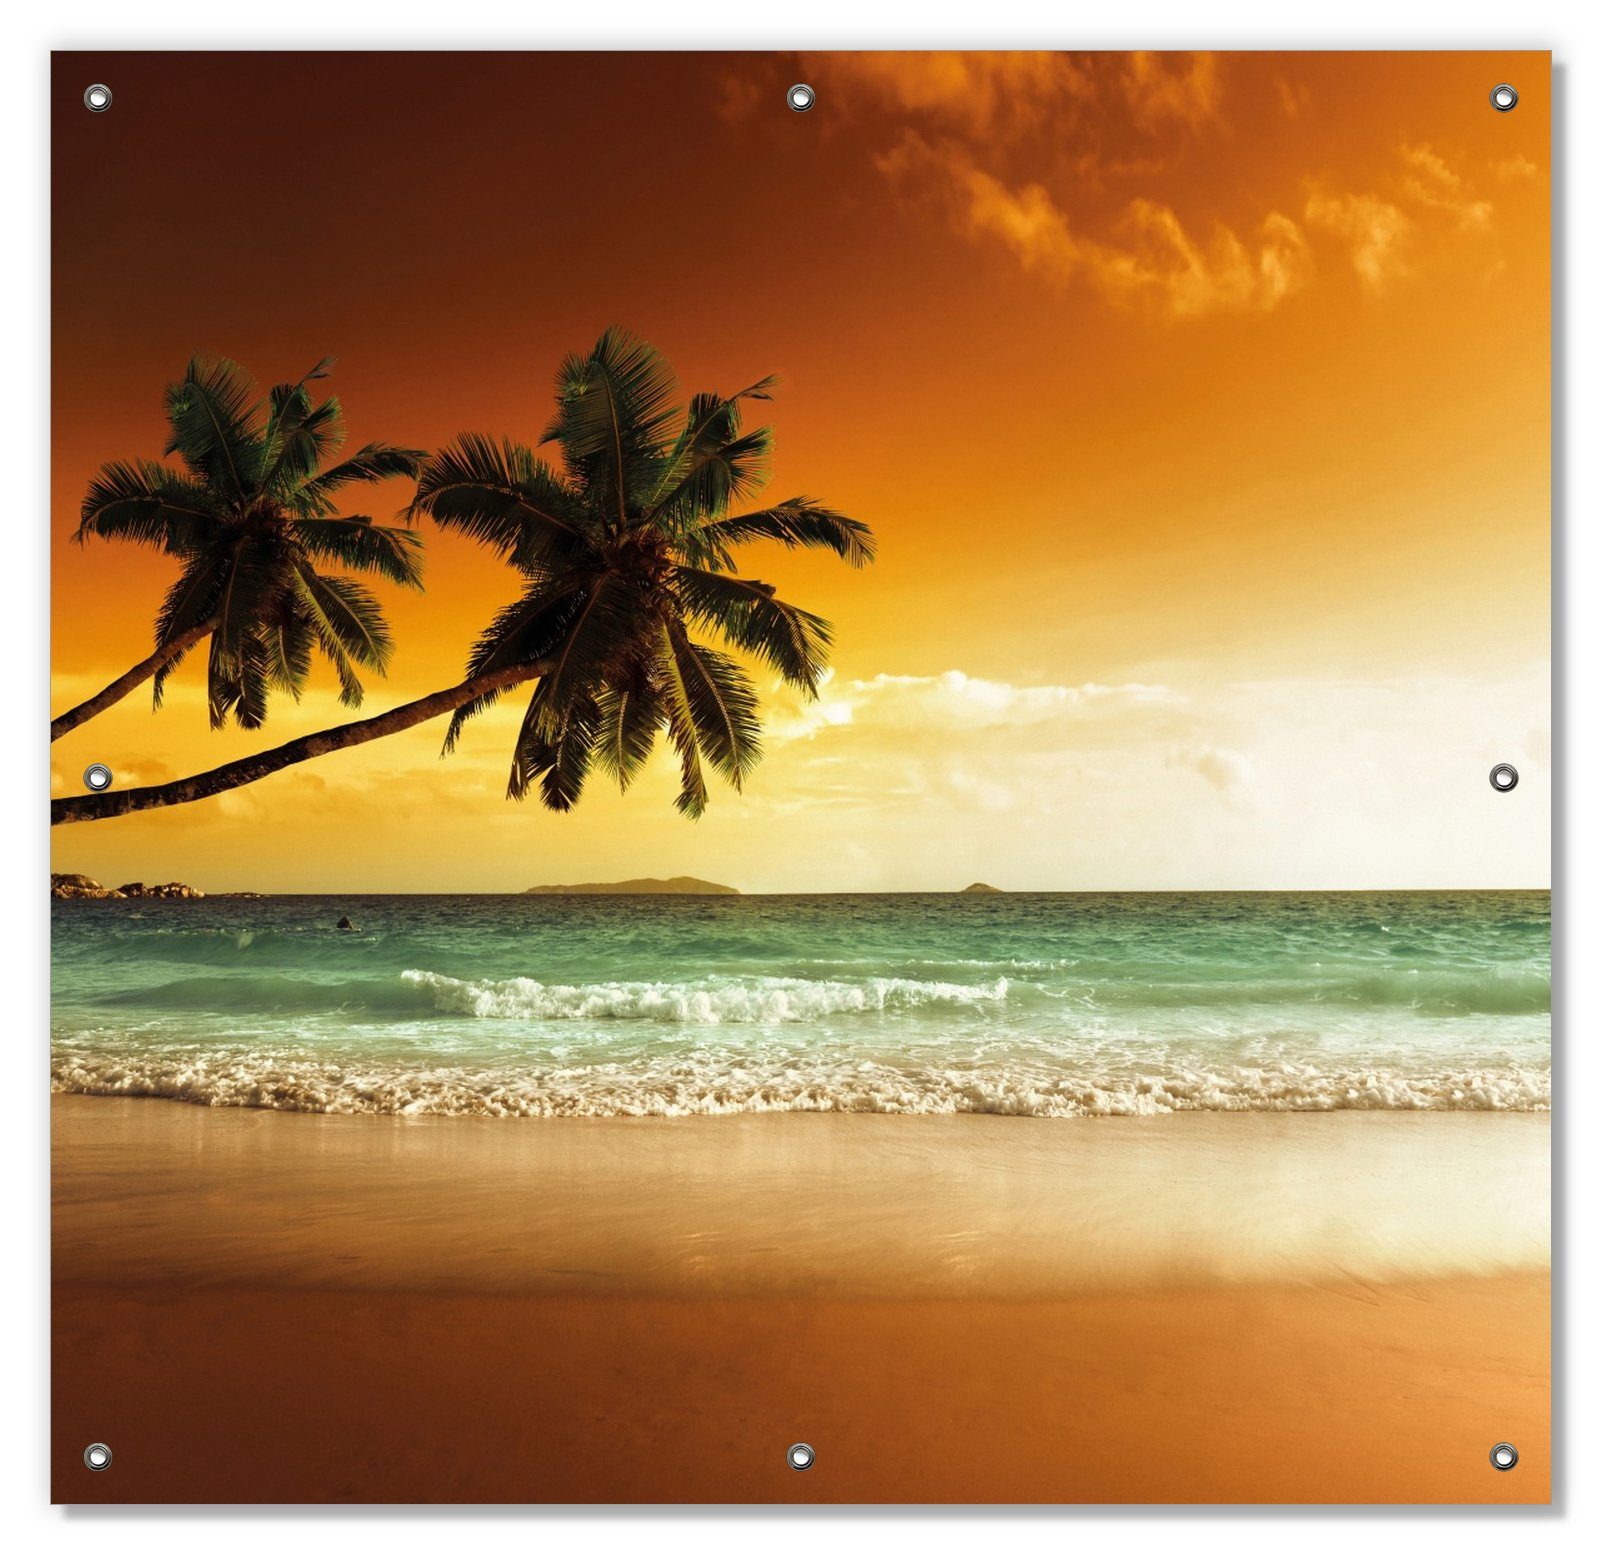 Sonnenschutz Palmen am Sandstrand wiederablösbar mit blickdicht, Saugnäpfen, und Sonne, Wallario, bei untergehender wiederverwendbar